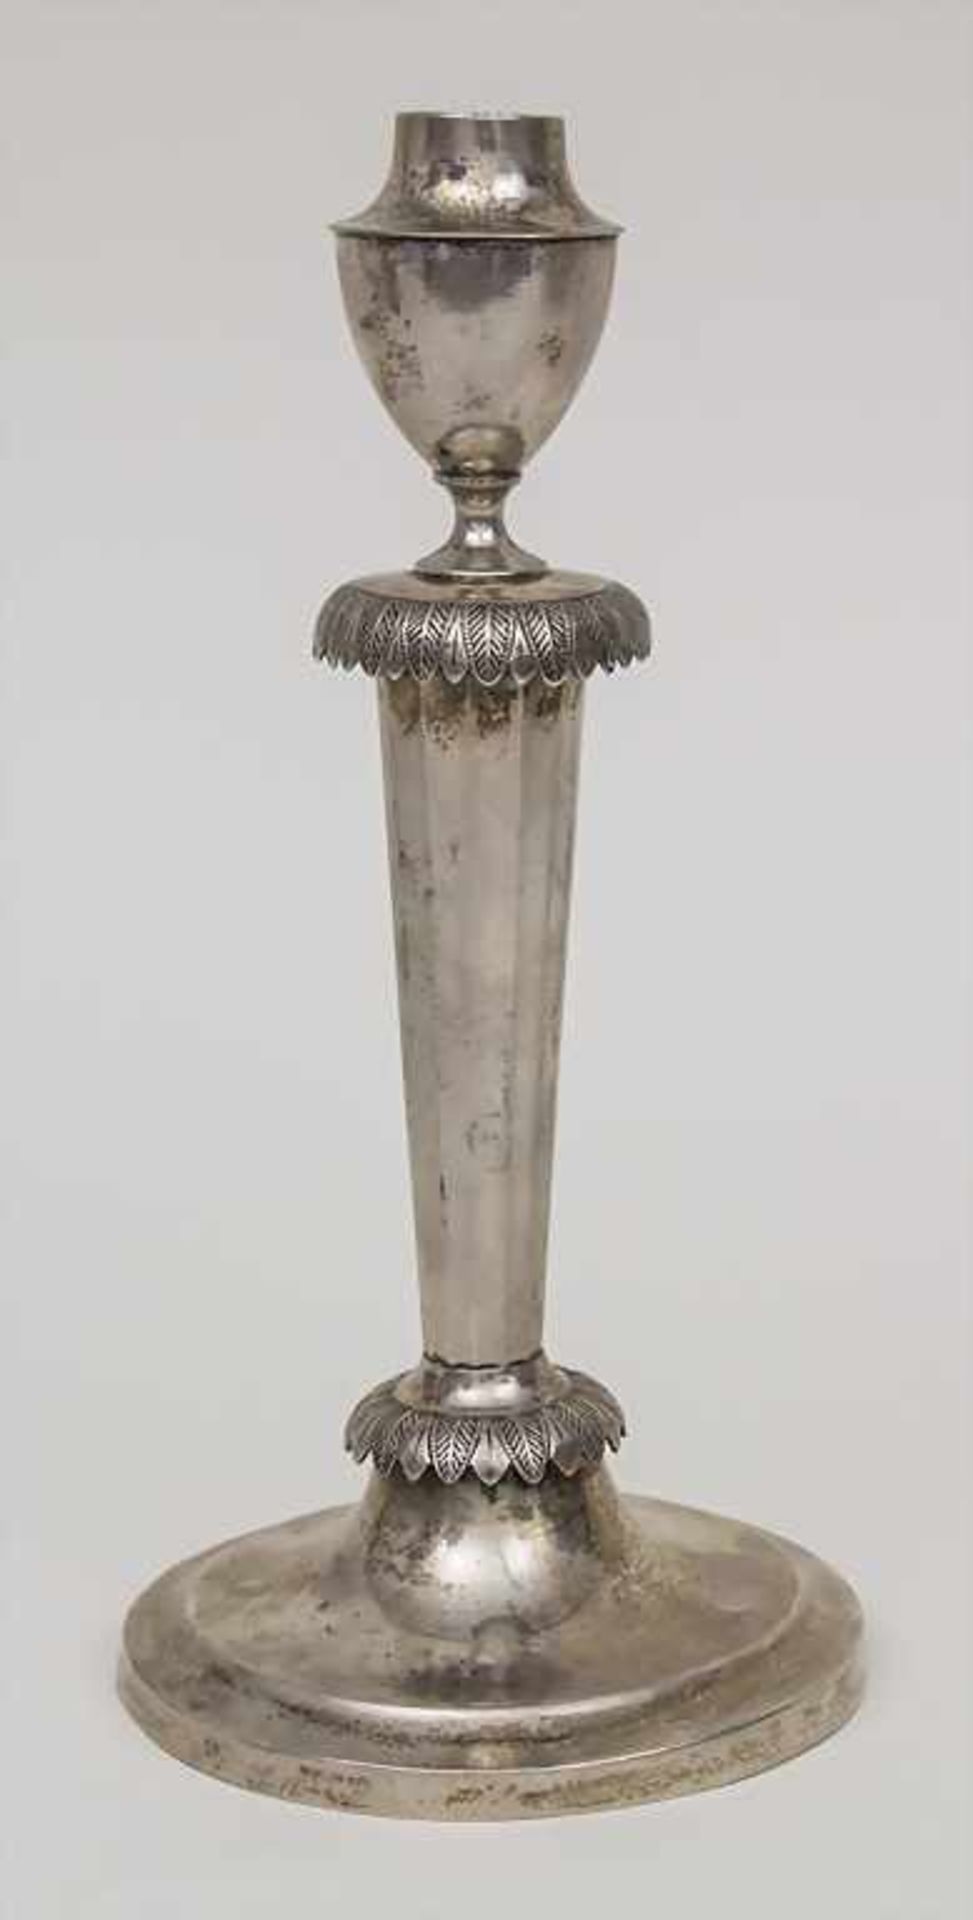 Empire Kerzenleuchter / A candle sticks, Wilhelm Conrad Hessenberg, Frankfurt, 1810 Punzierung: